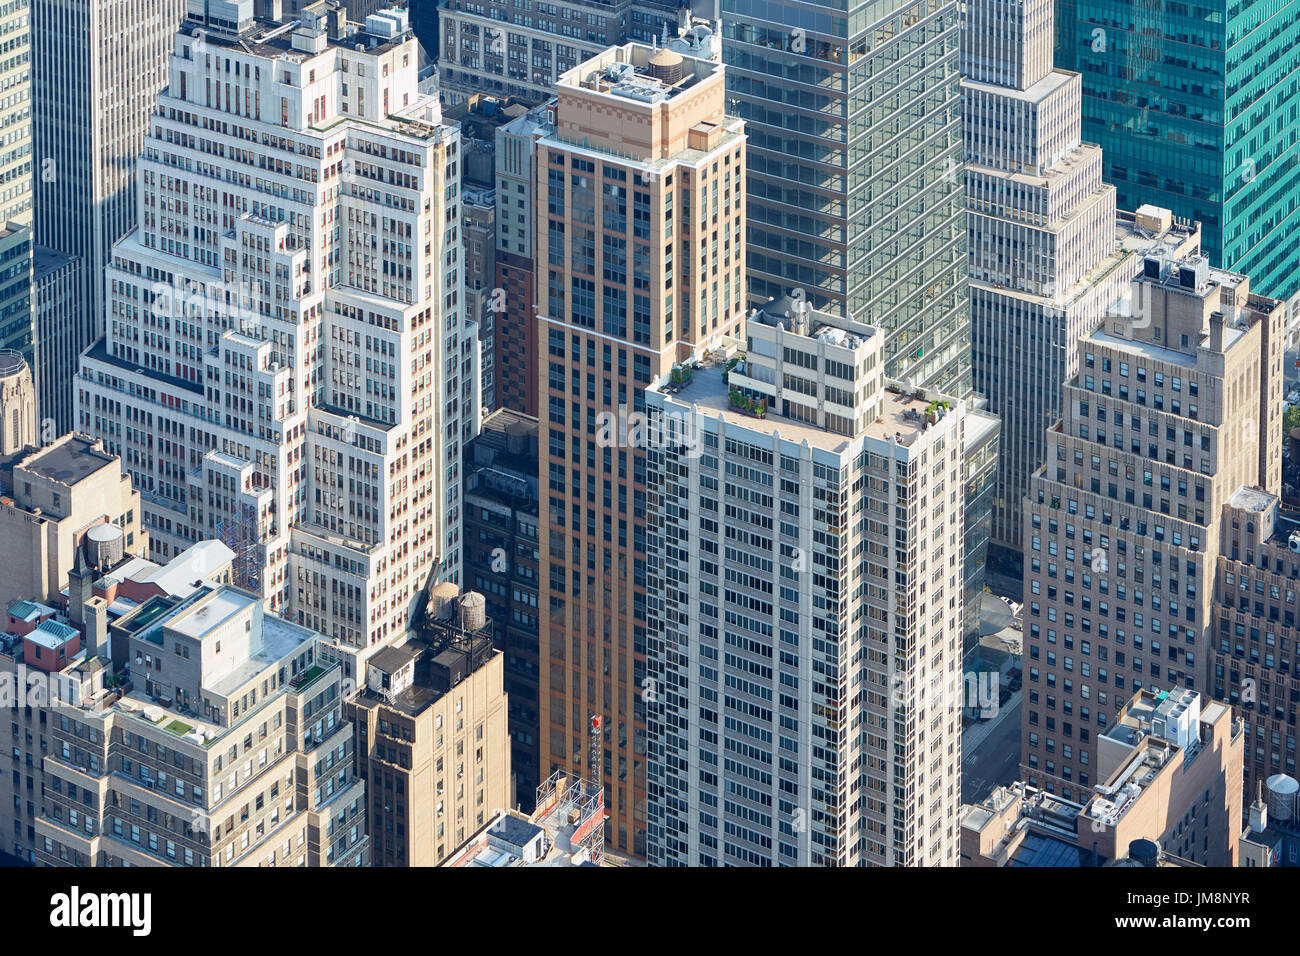 La città di New York skyline di Manhattan vista aerea con colori chiari di grattacieli in presenza di luce solare Foto Stock